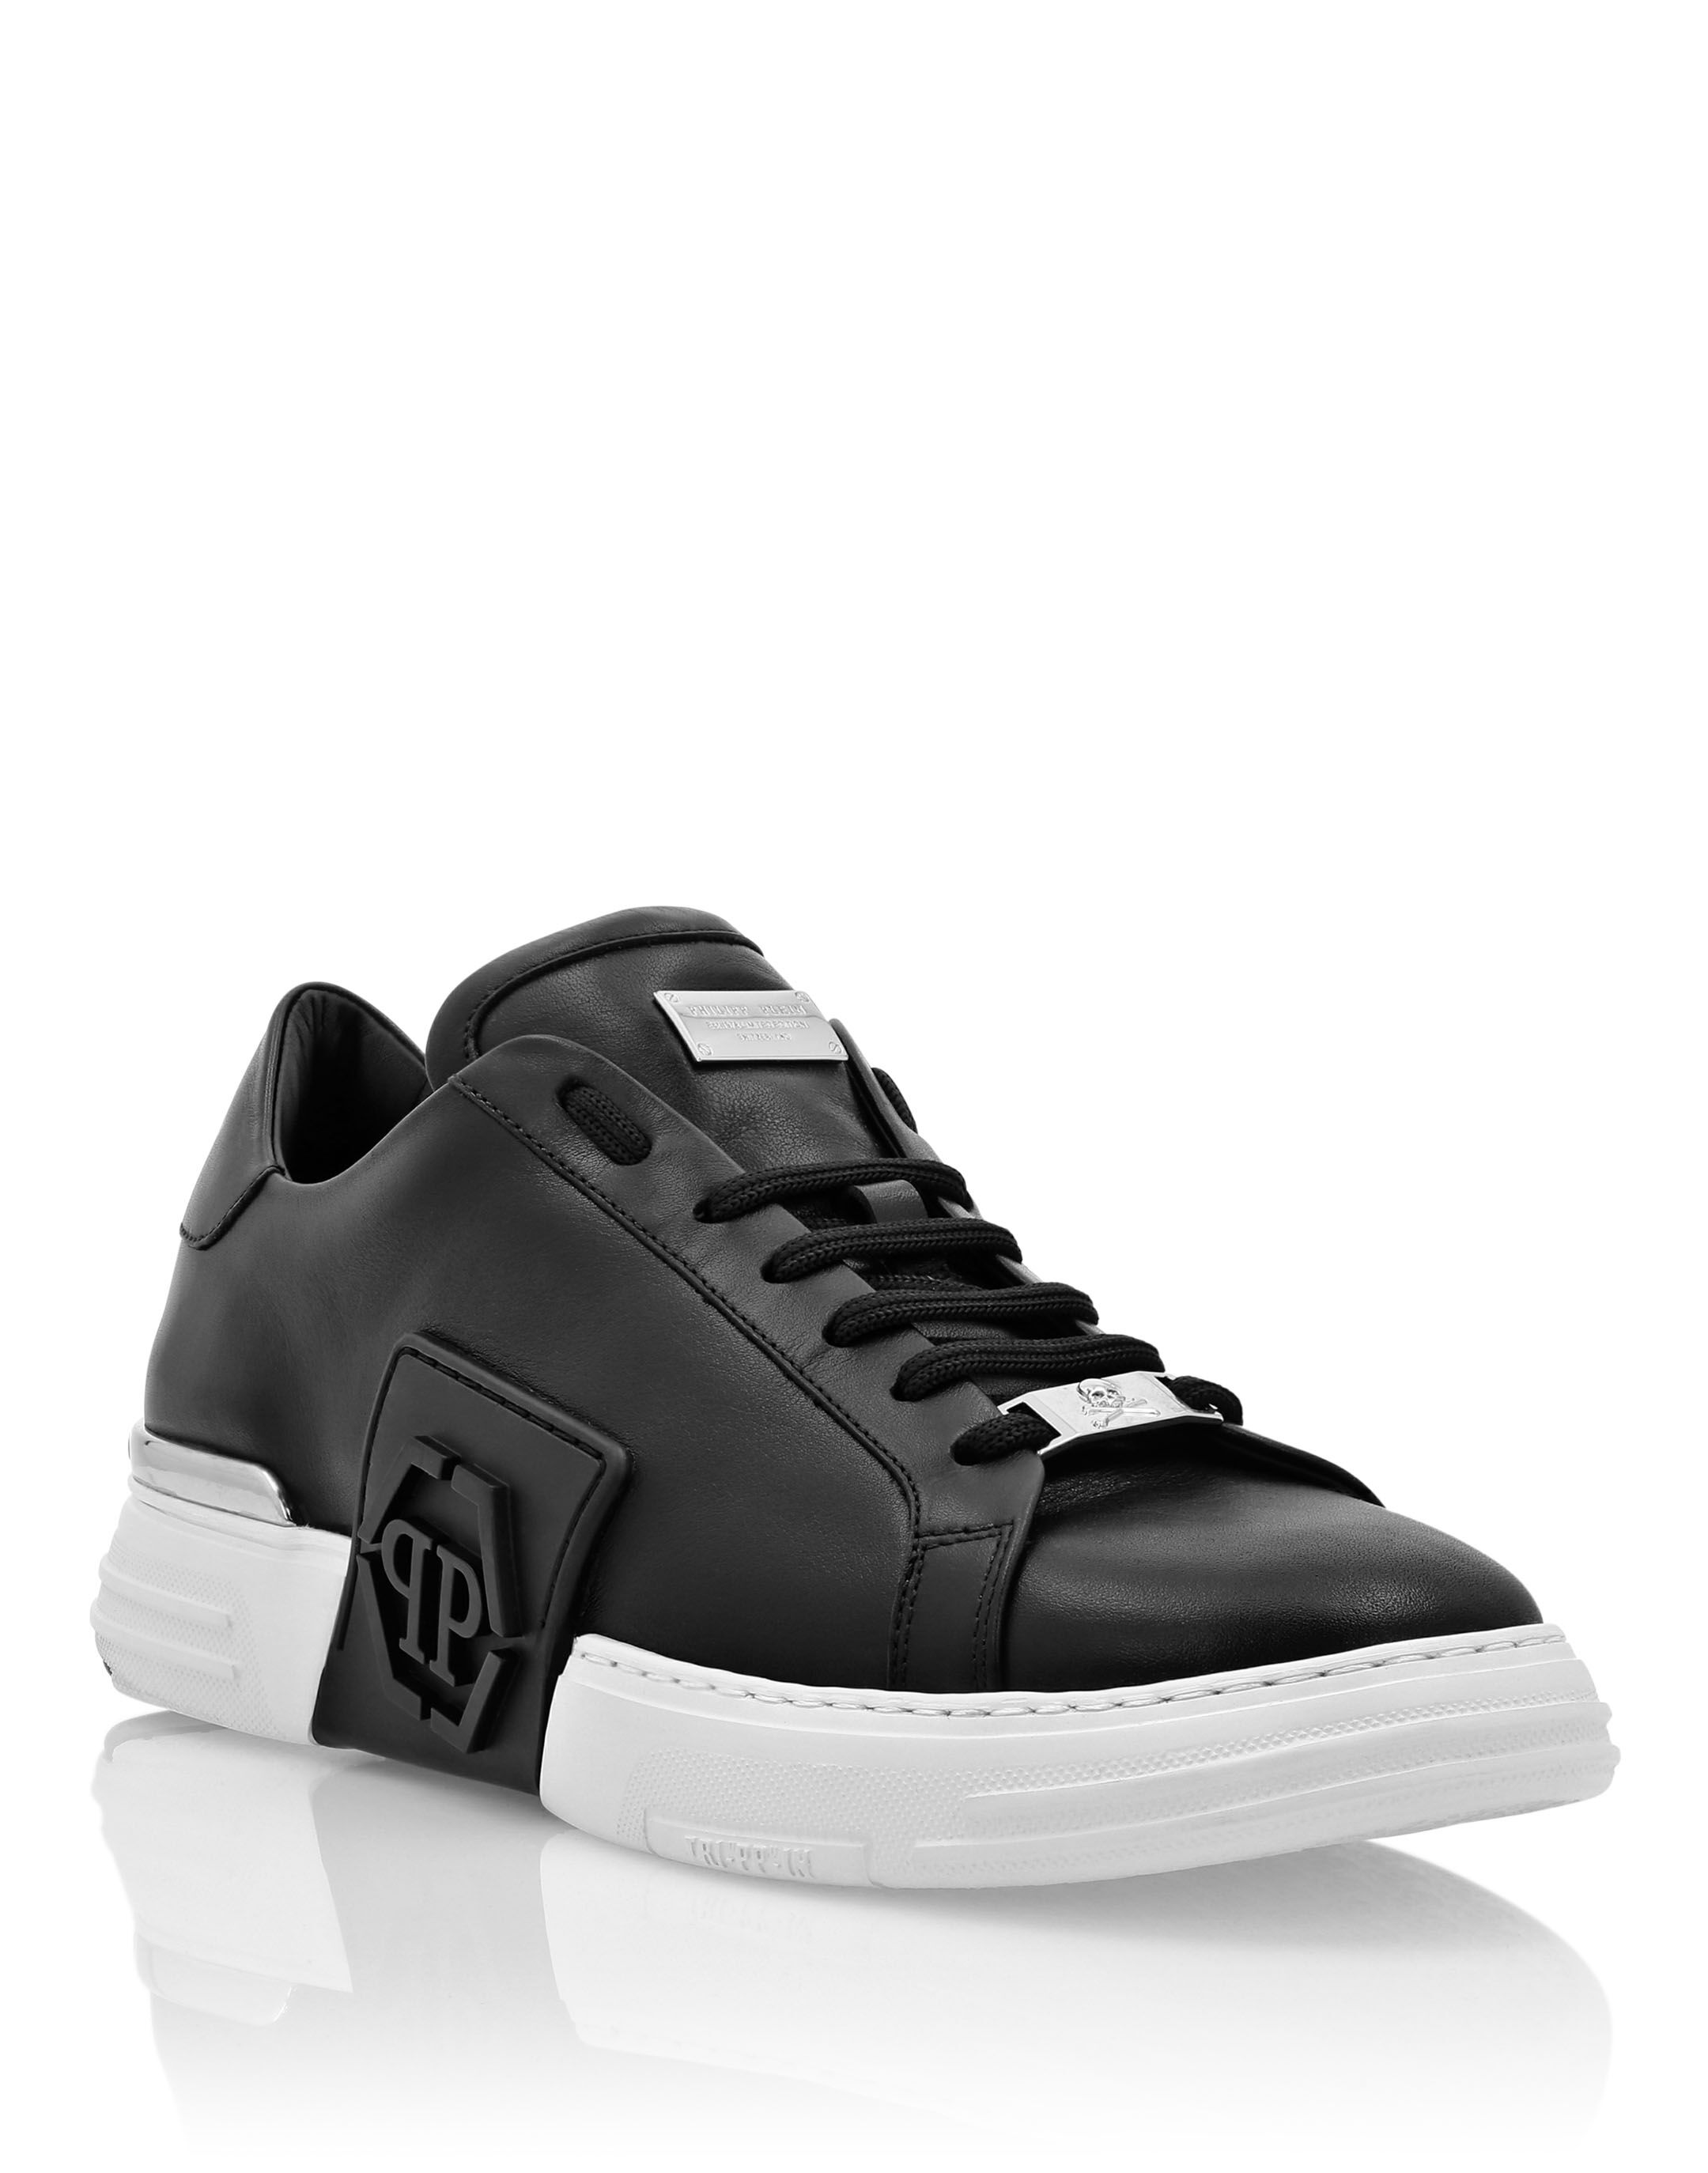 black low top tennis shoes